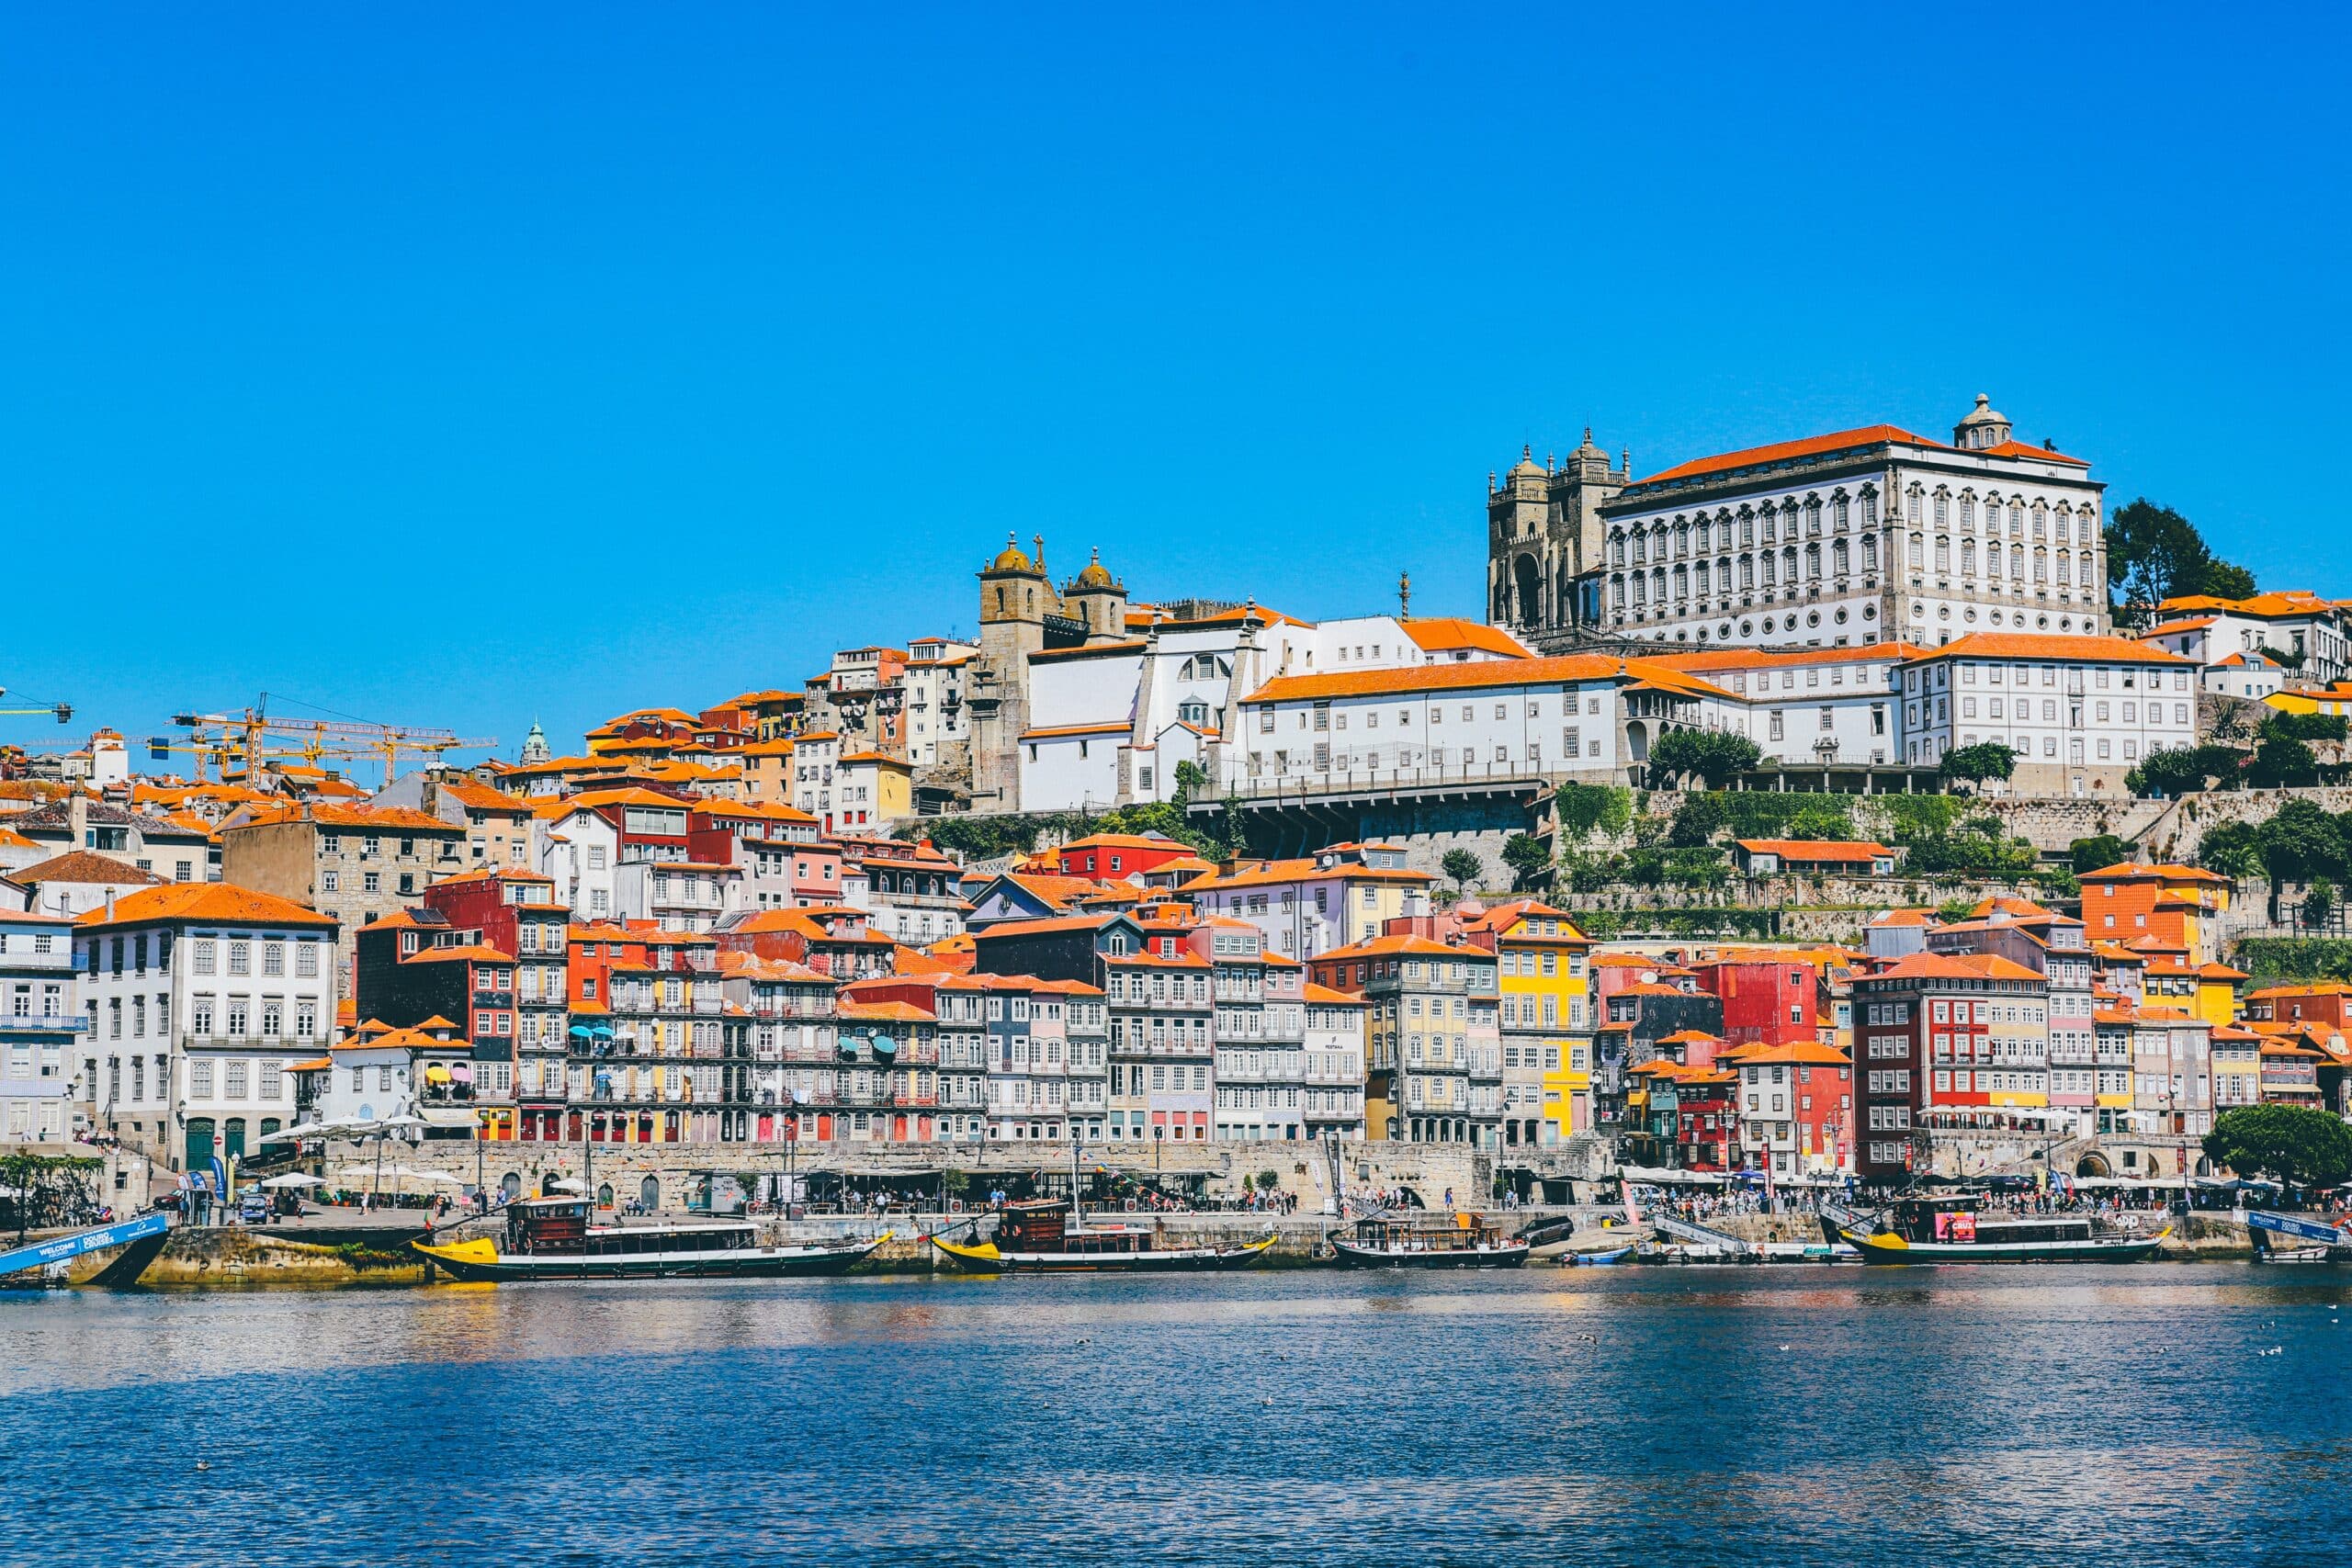 morro de porto, em portugal, com várias construções antigas e coloridas beirando o rio